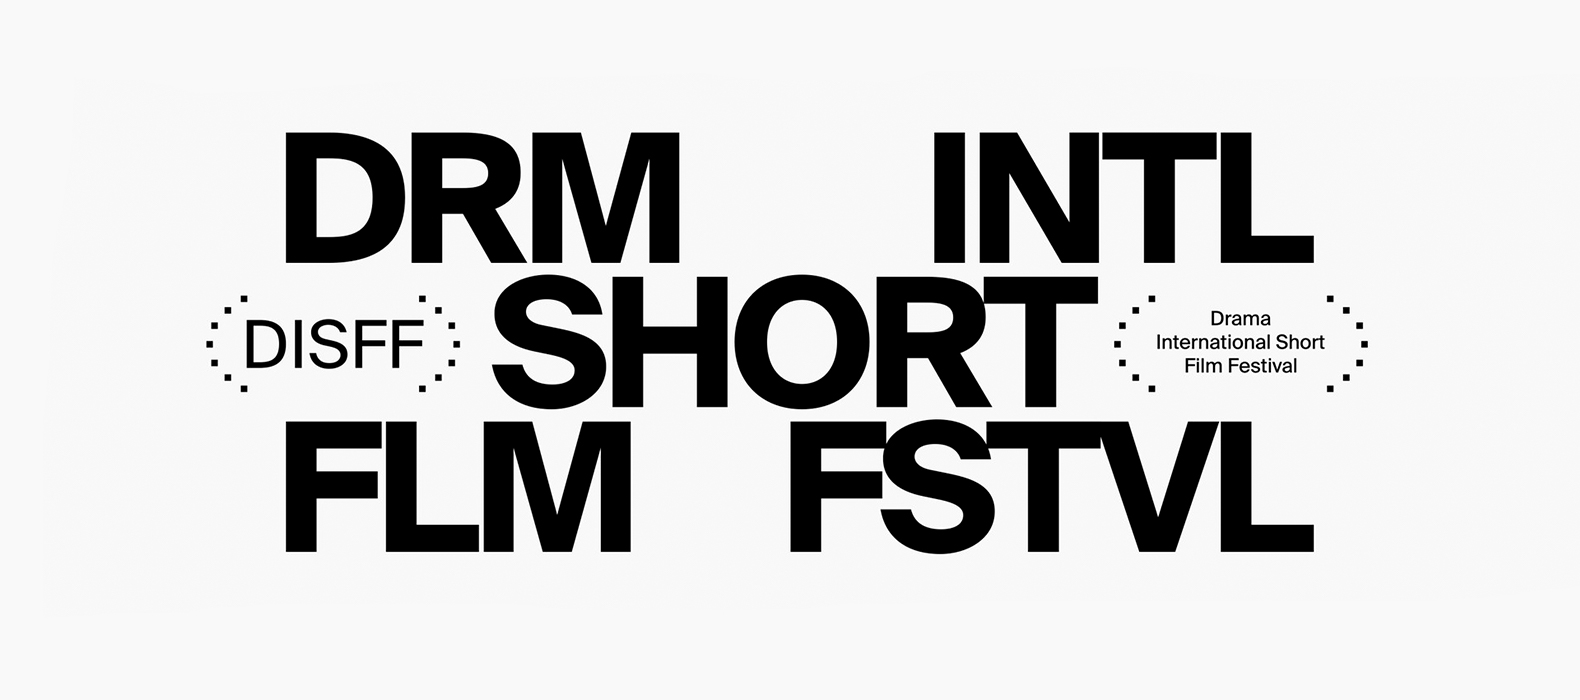 جشنواره بین المللی فیلم کوتاه دراما